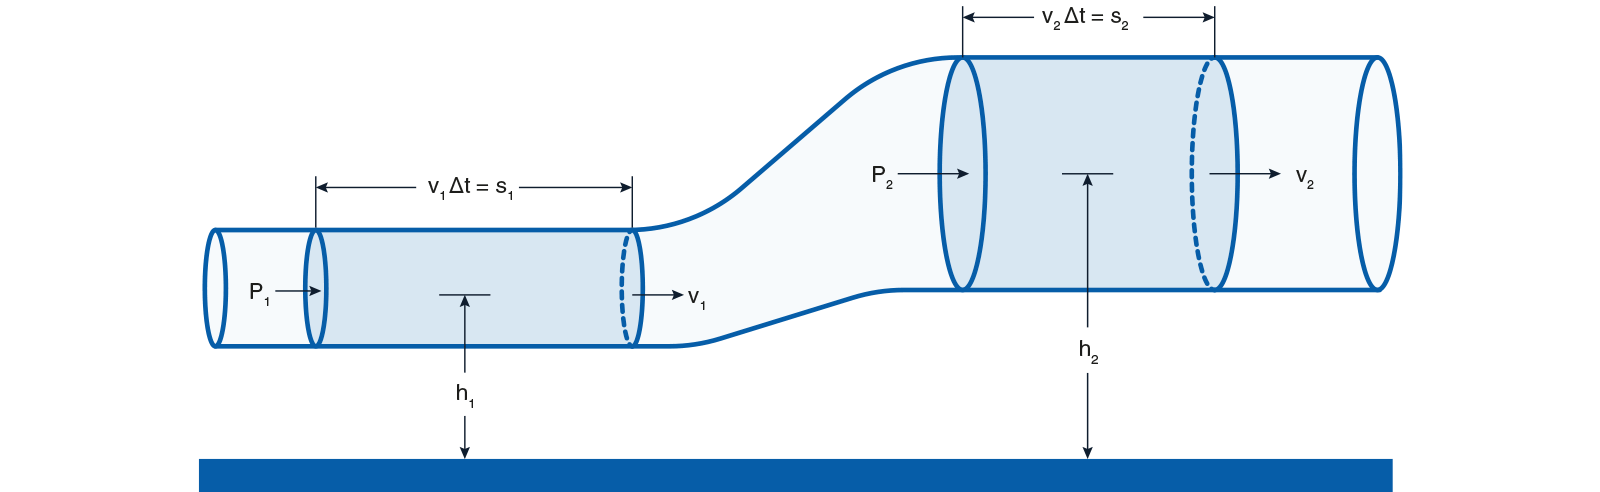 каков принцип работы трубчатого расходомера Вентуриса диаграмма Бернулли